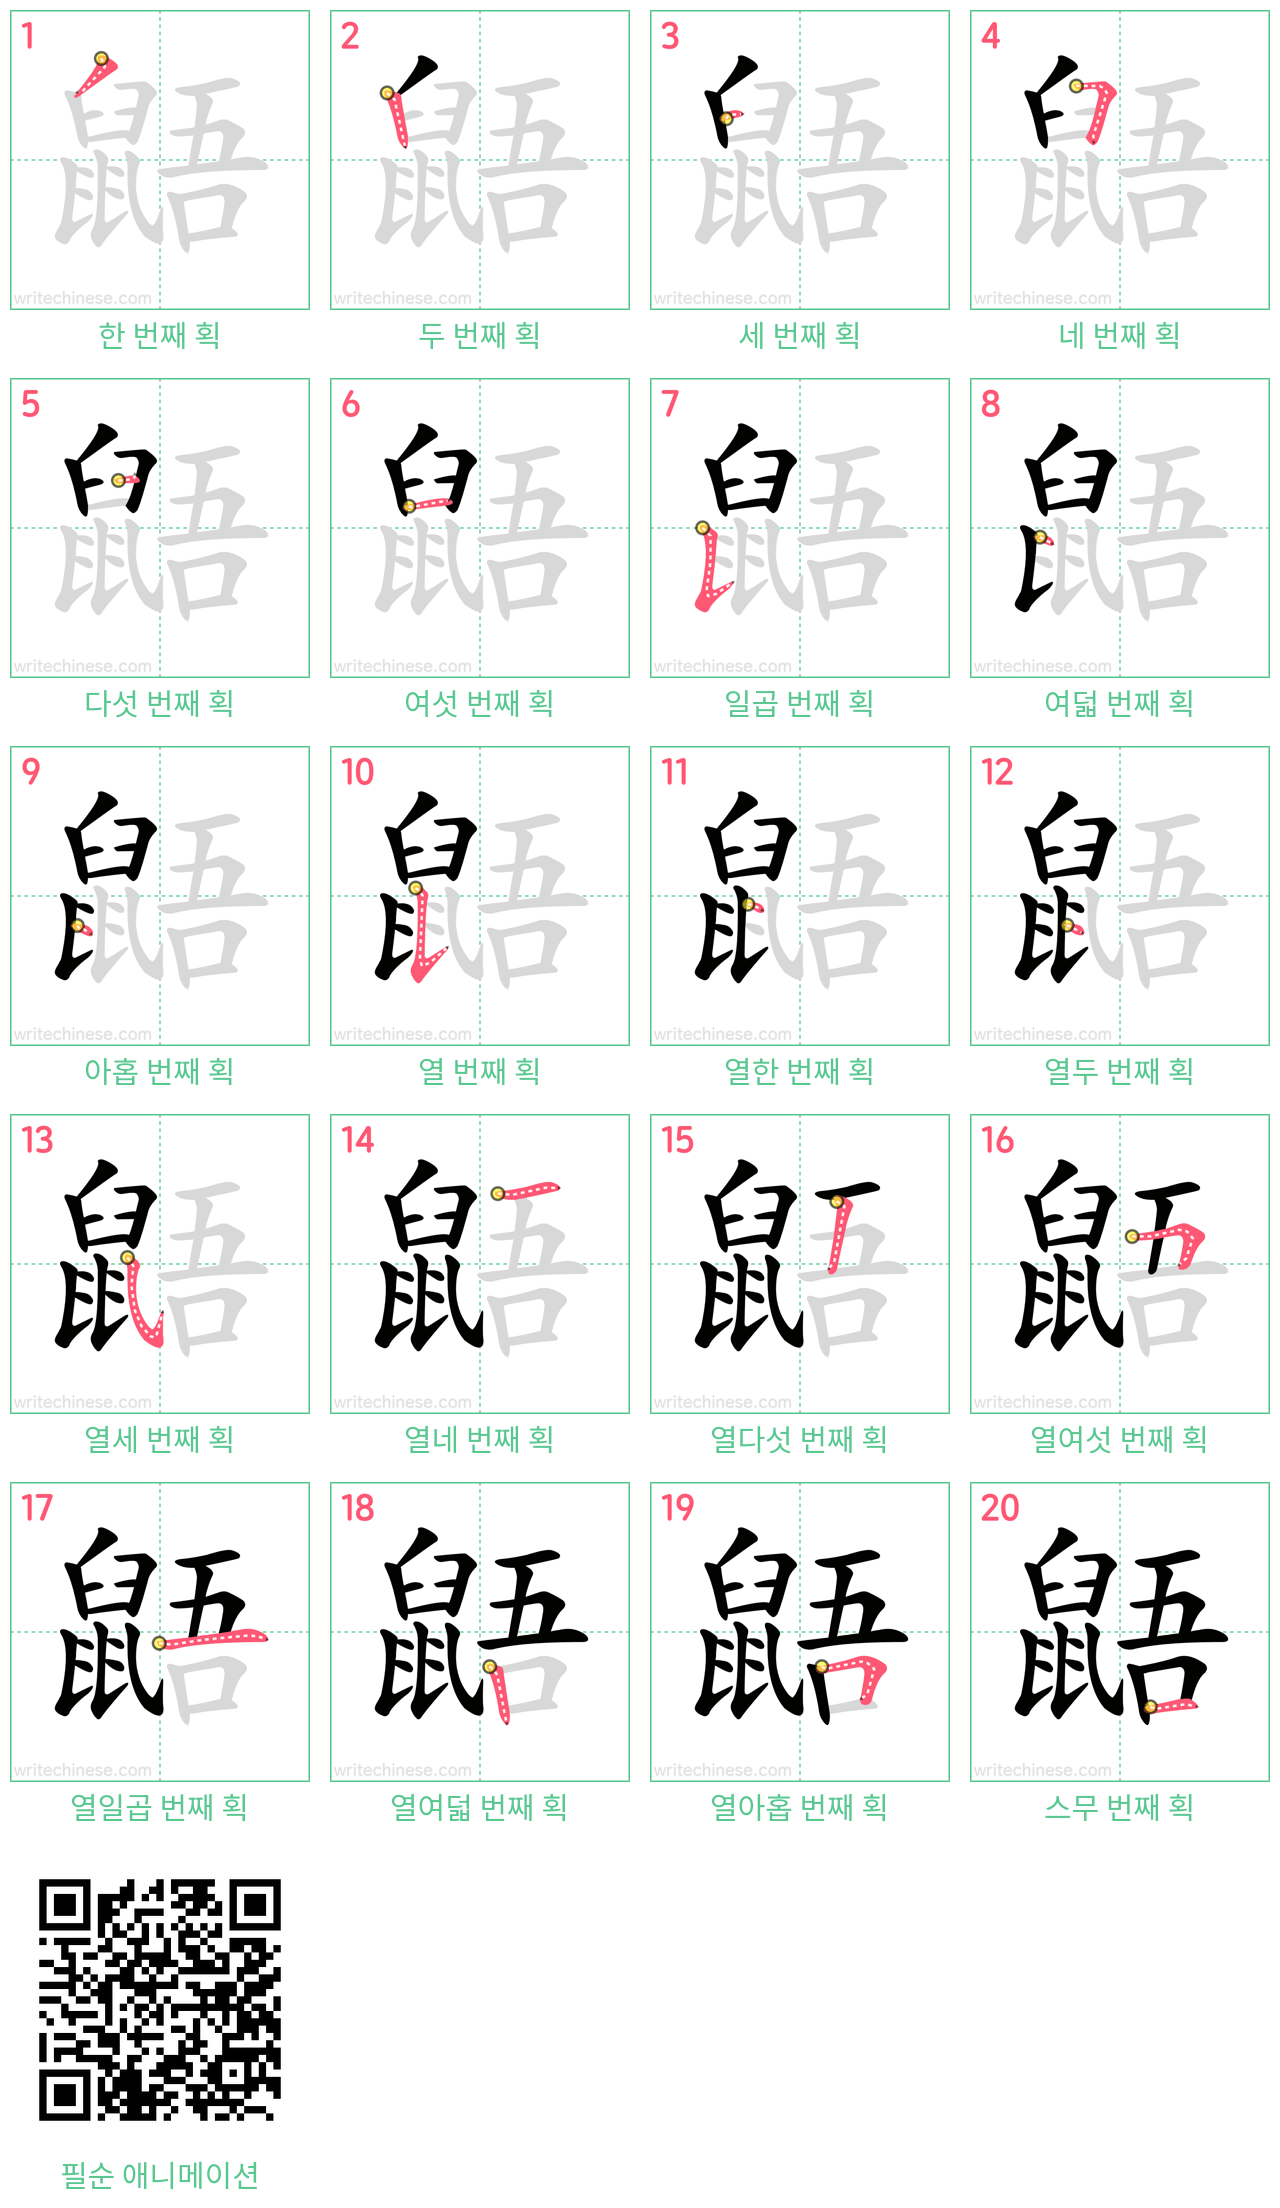 鼯 step-by-step stroke order diagrams